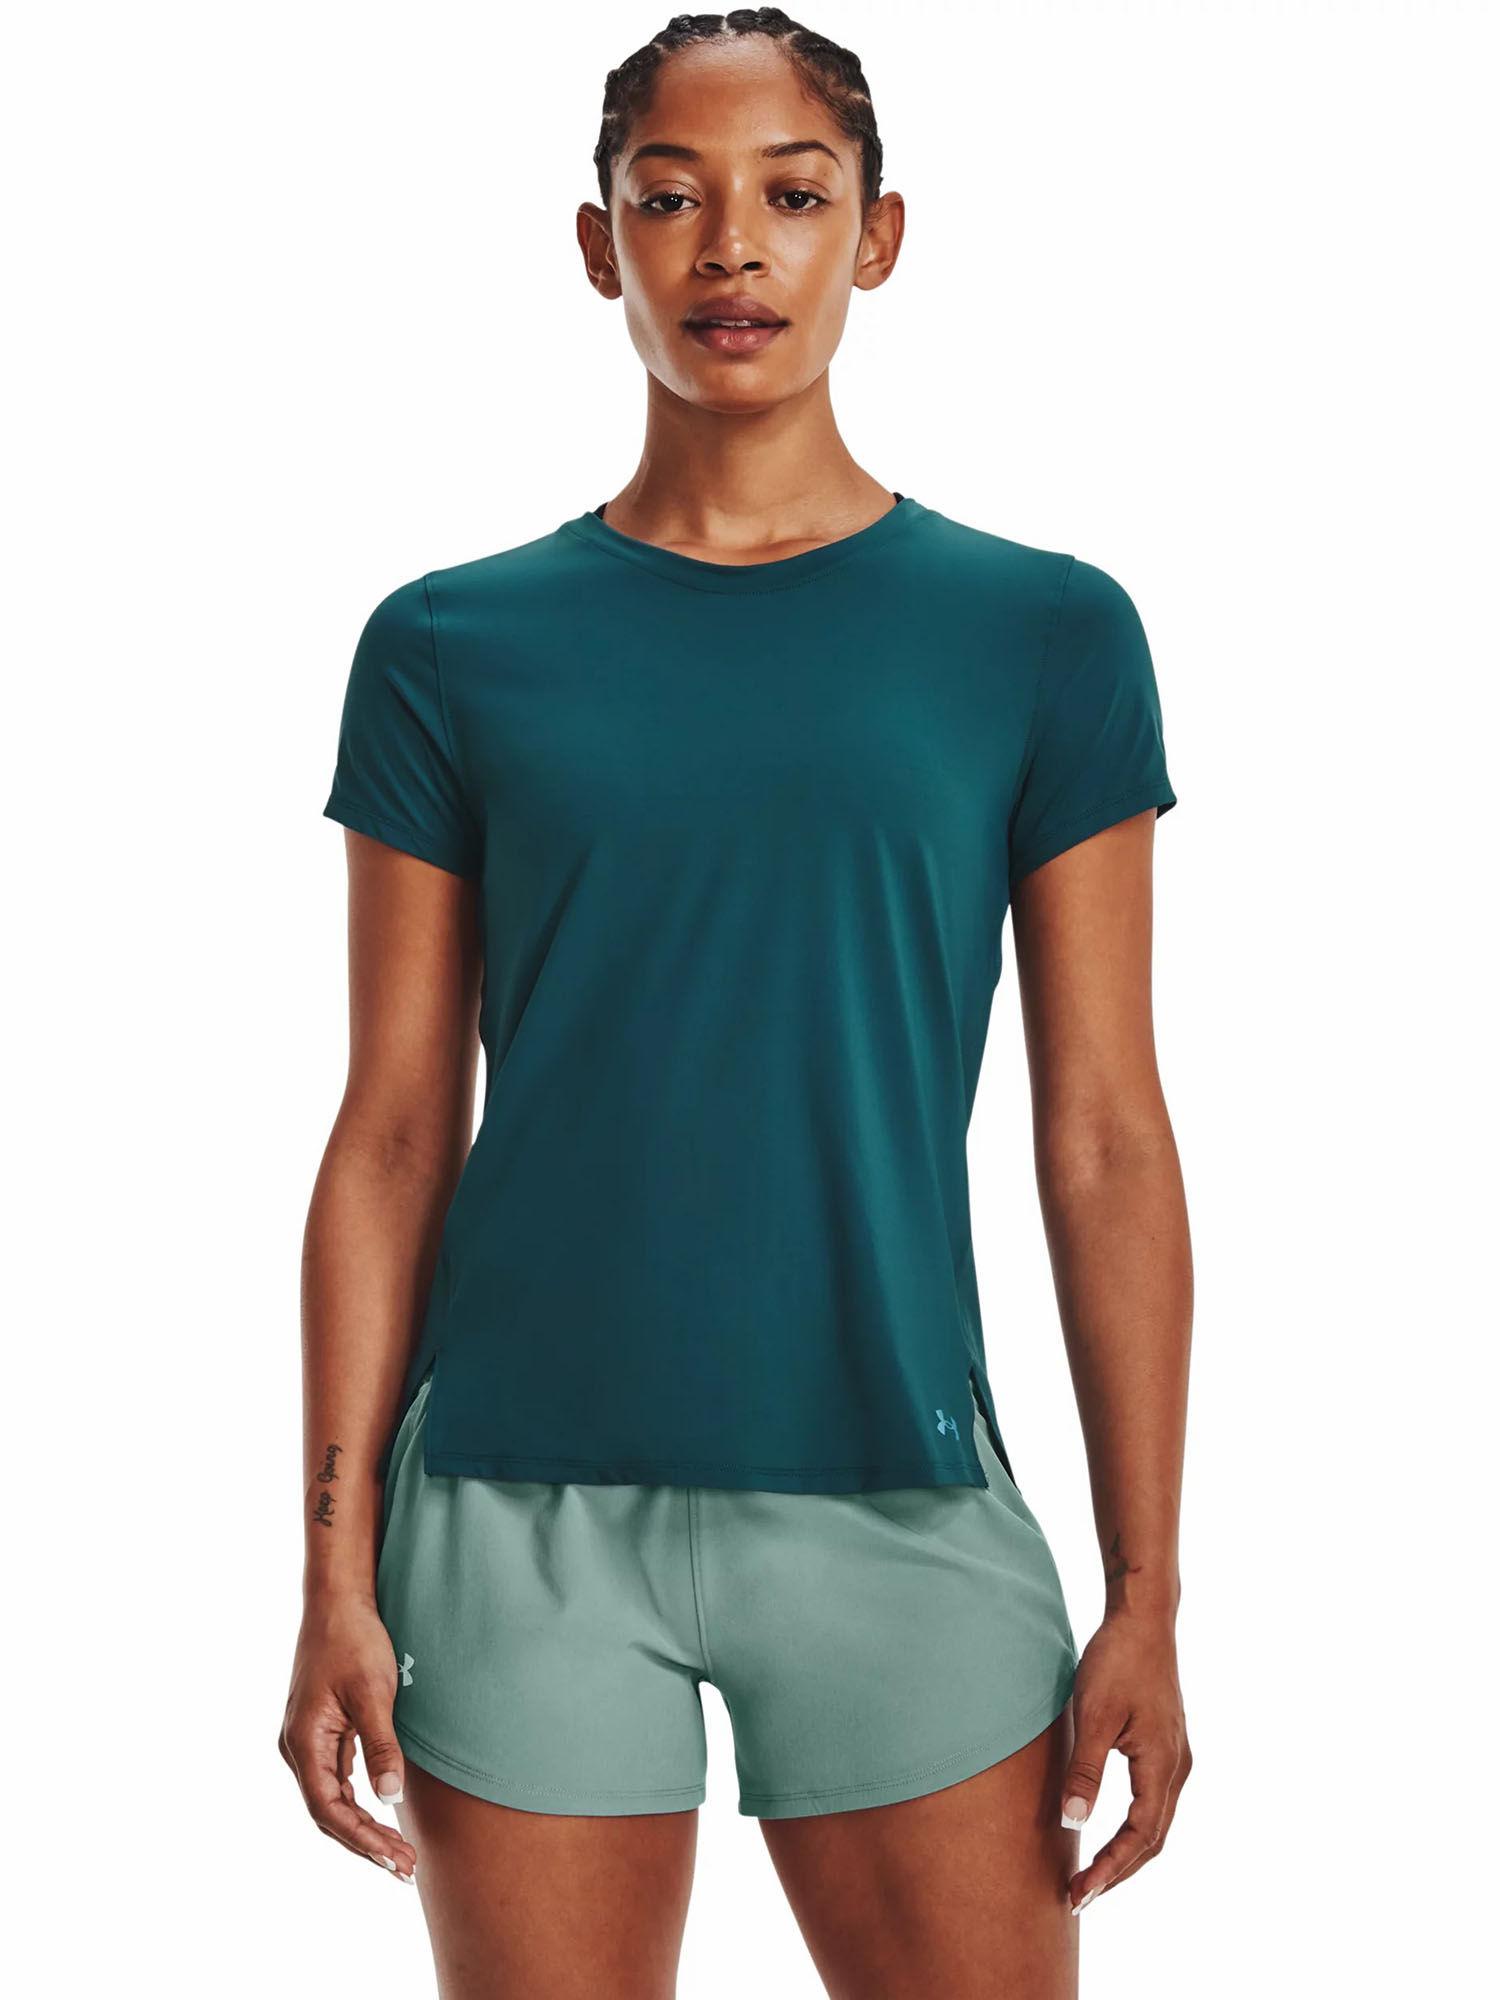 green iso-chill run laser short sleeve t-shirt